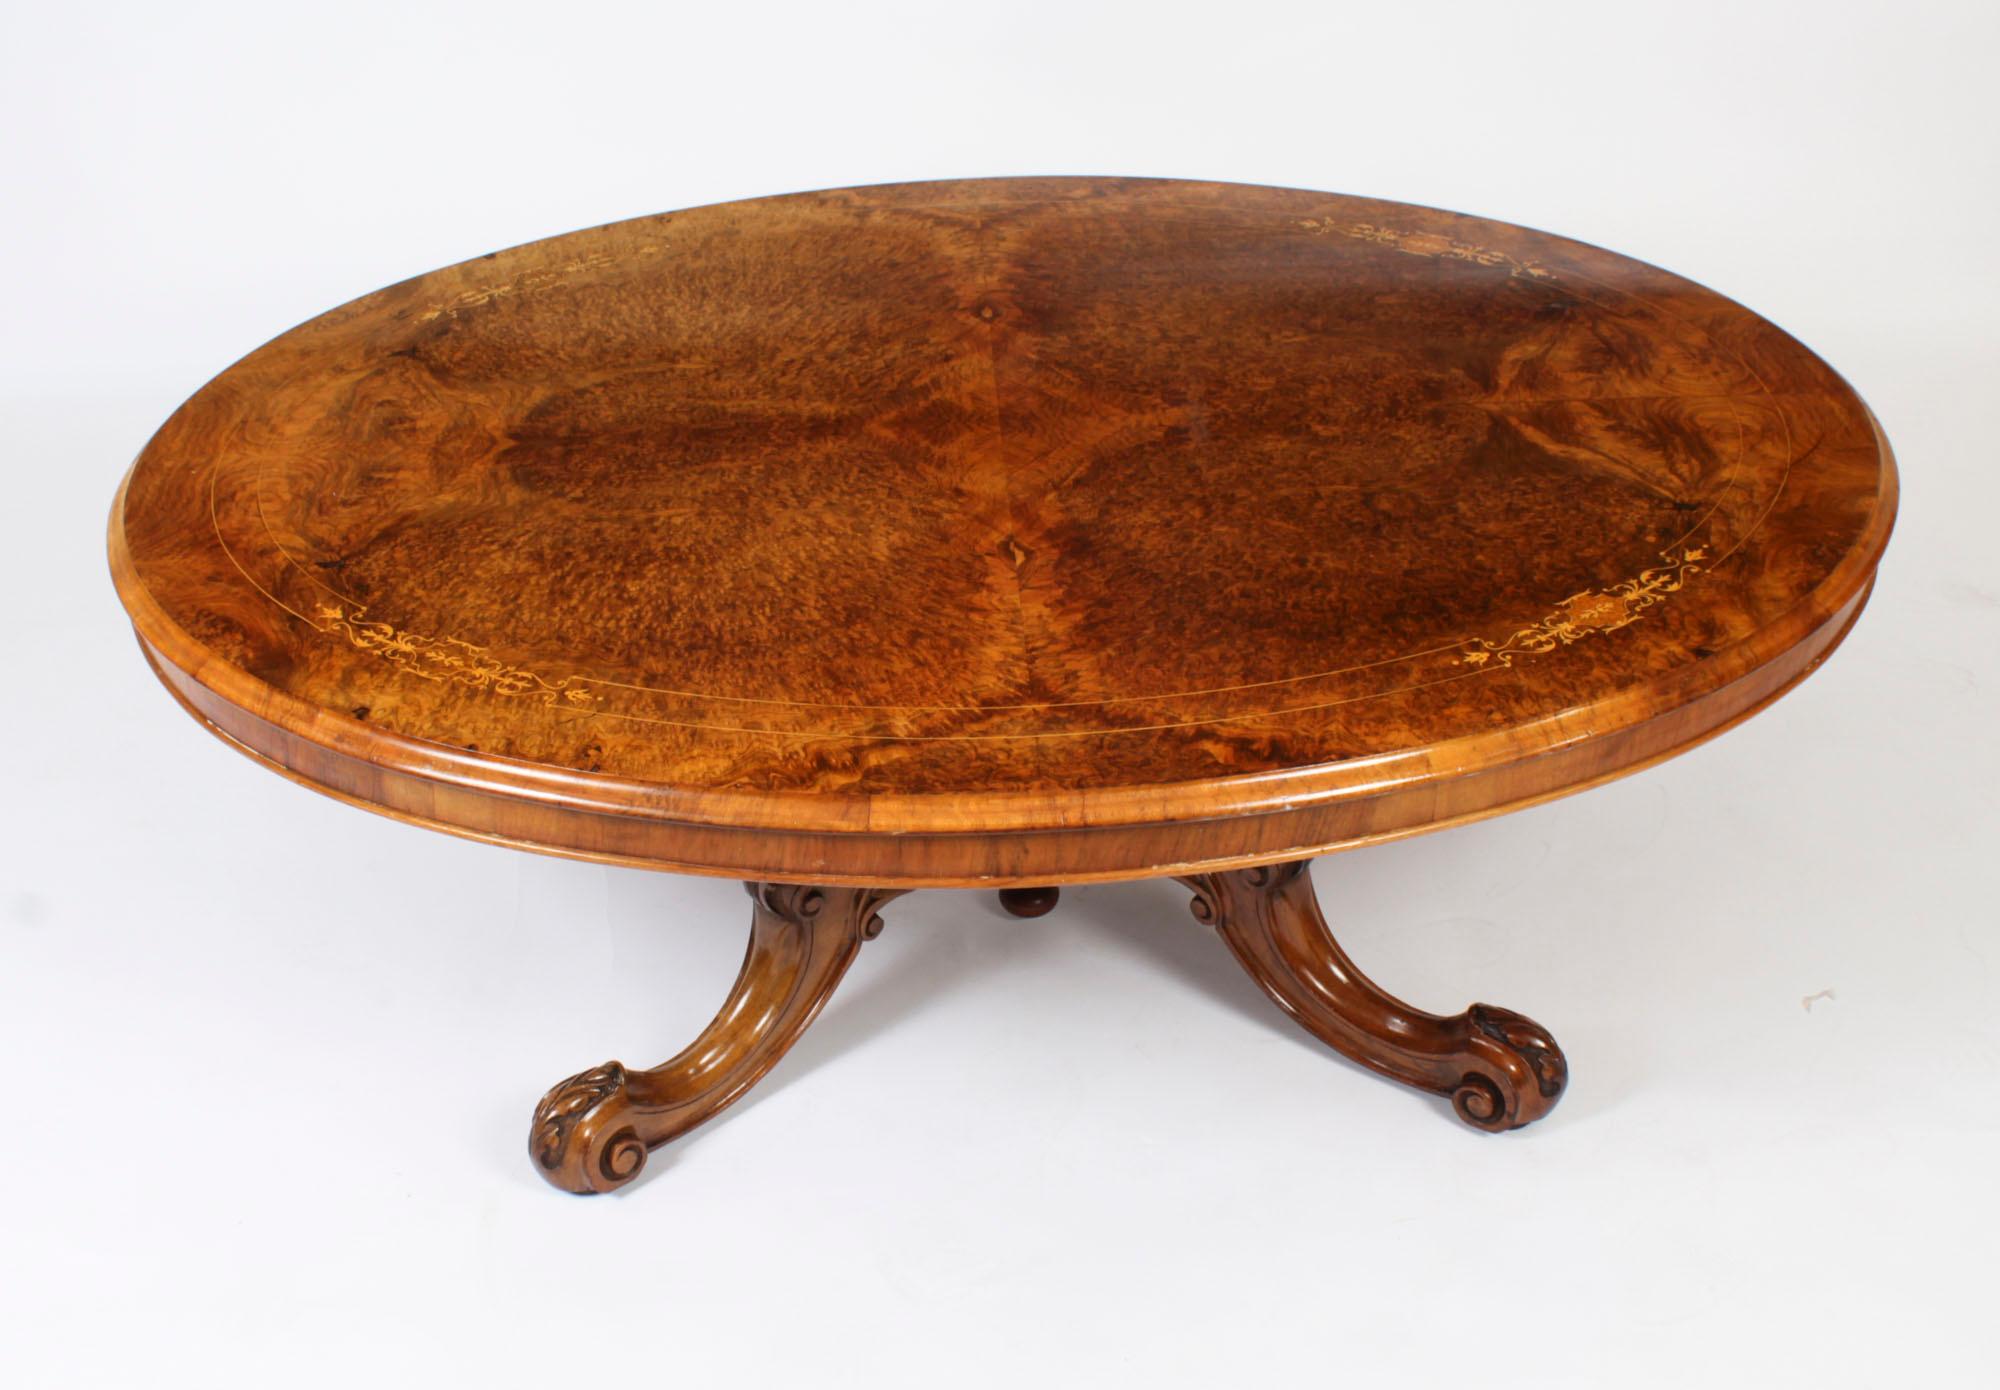 Voici une superbe table basse victorienne en ronce de noyer et marqueterie, datant d'environ 1860.

Le plateau de la table est de forme ovale et présente une ronce de noyer merveilleusement figurée avec de superbes incrustations de buis et de